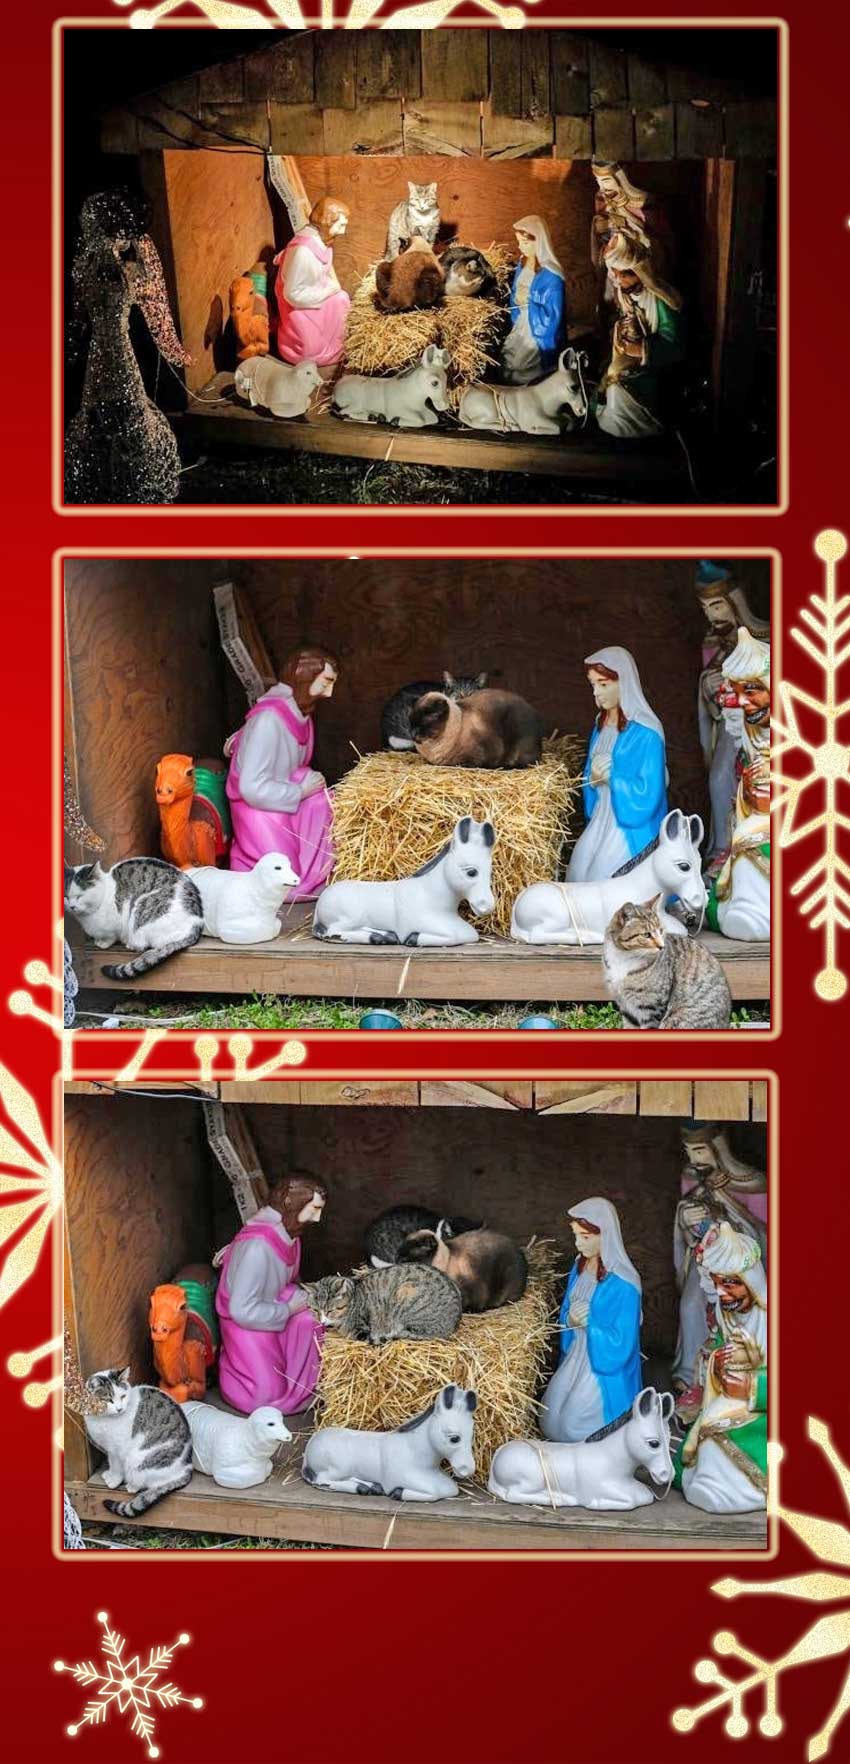 feral cats take over nativity scene